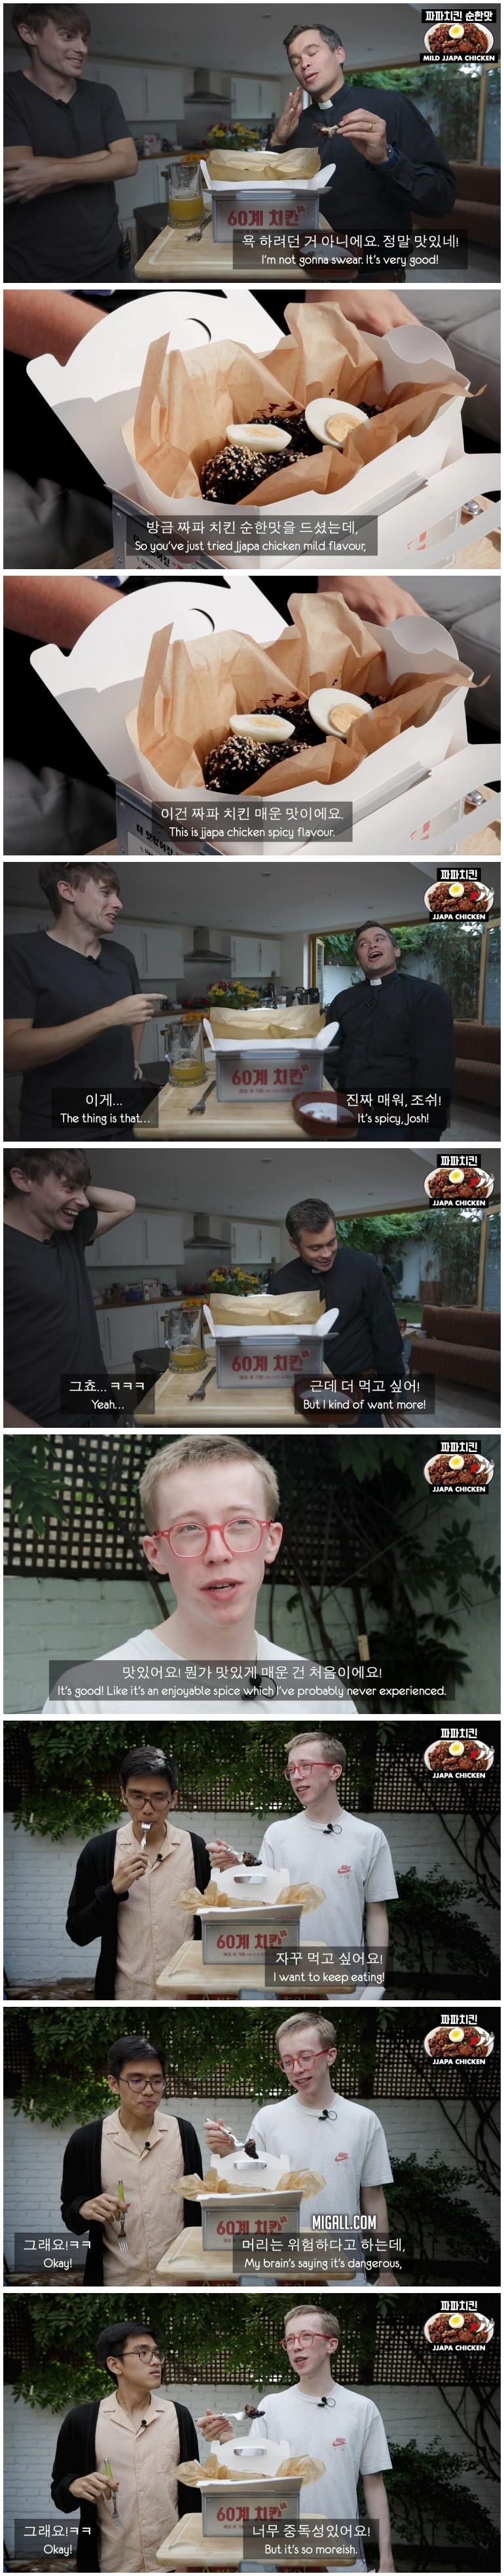 한국 치킨을 처음 먹어본 영국 대학생들의 반응